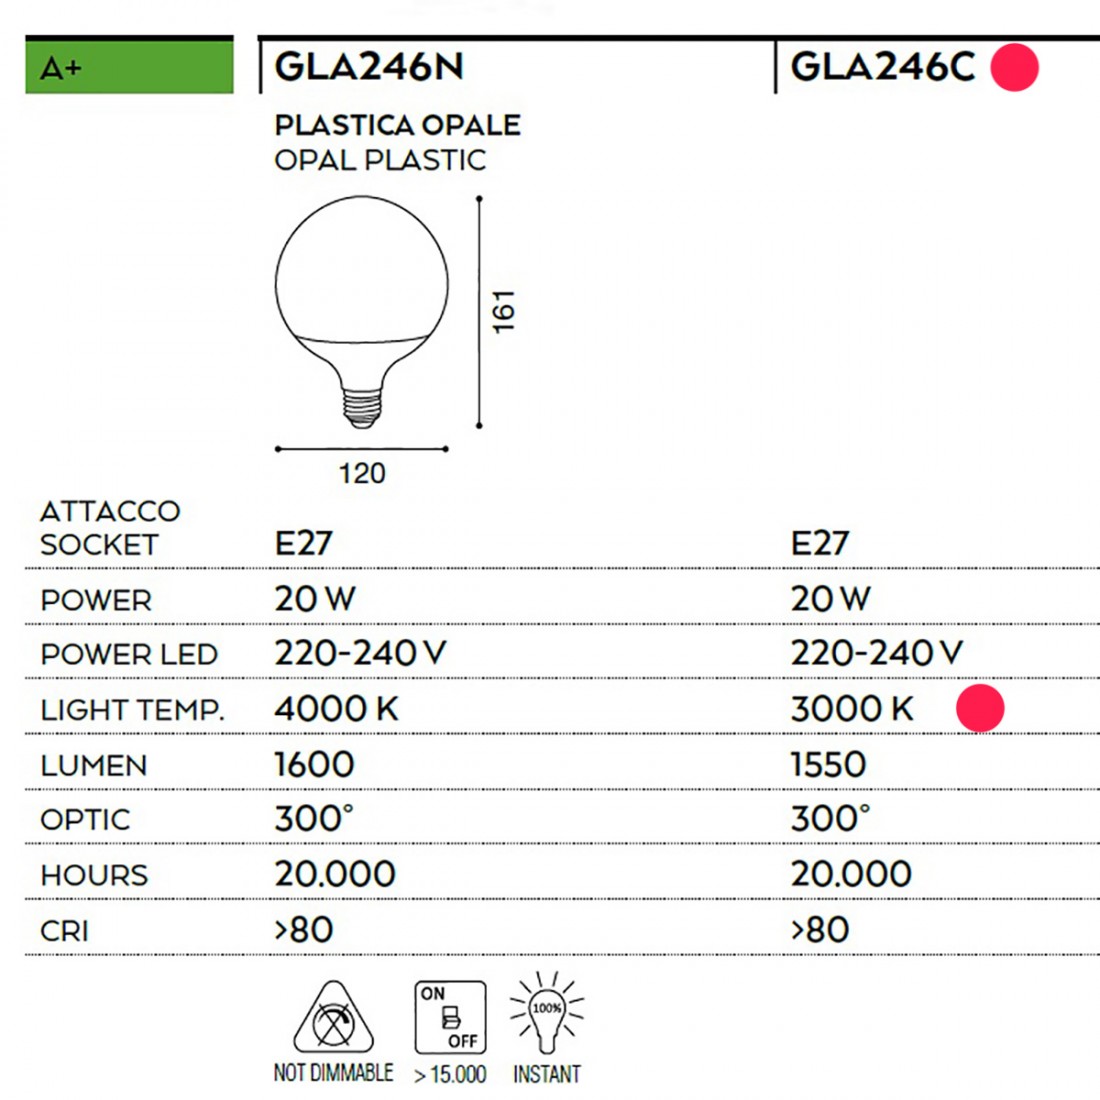 Ampoule led ronde, globe, plastique blanc, led E27 20W, lumière chaude